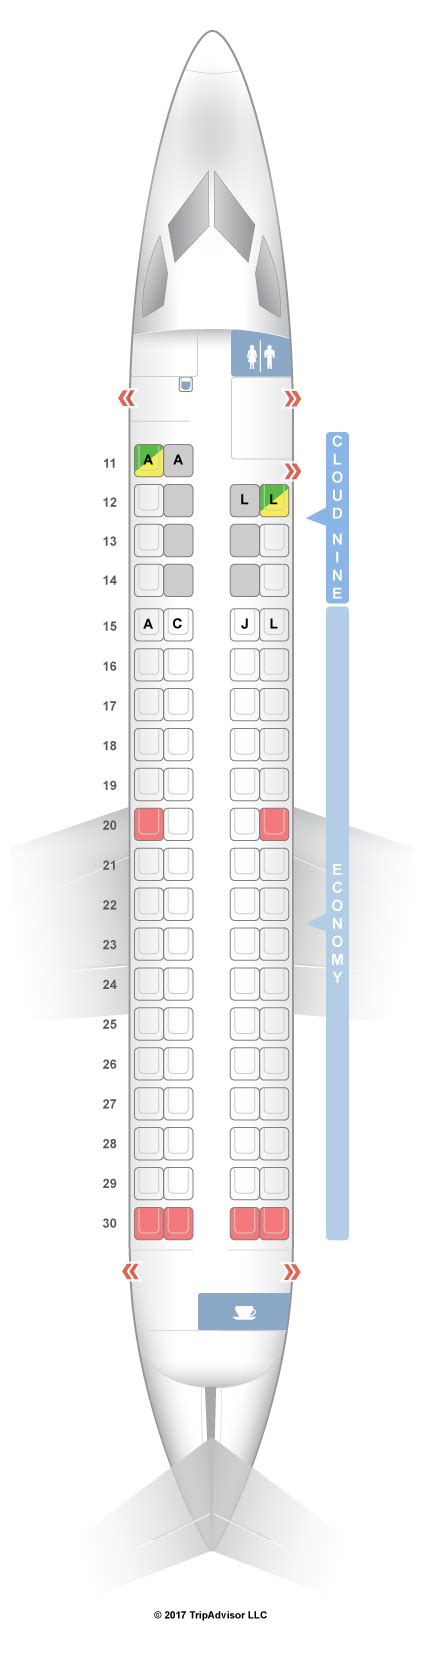 Seatguru Seat Map Ethiopian Airlines